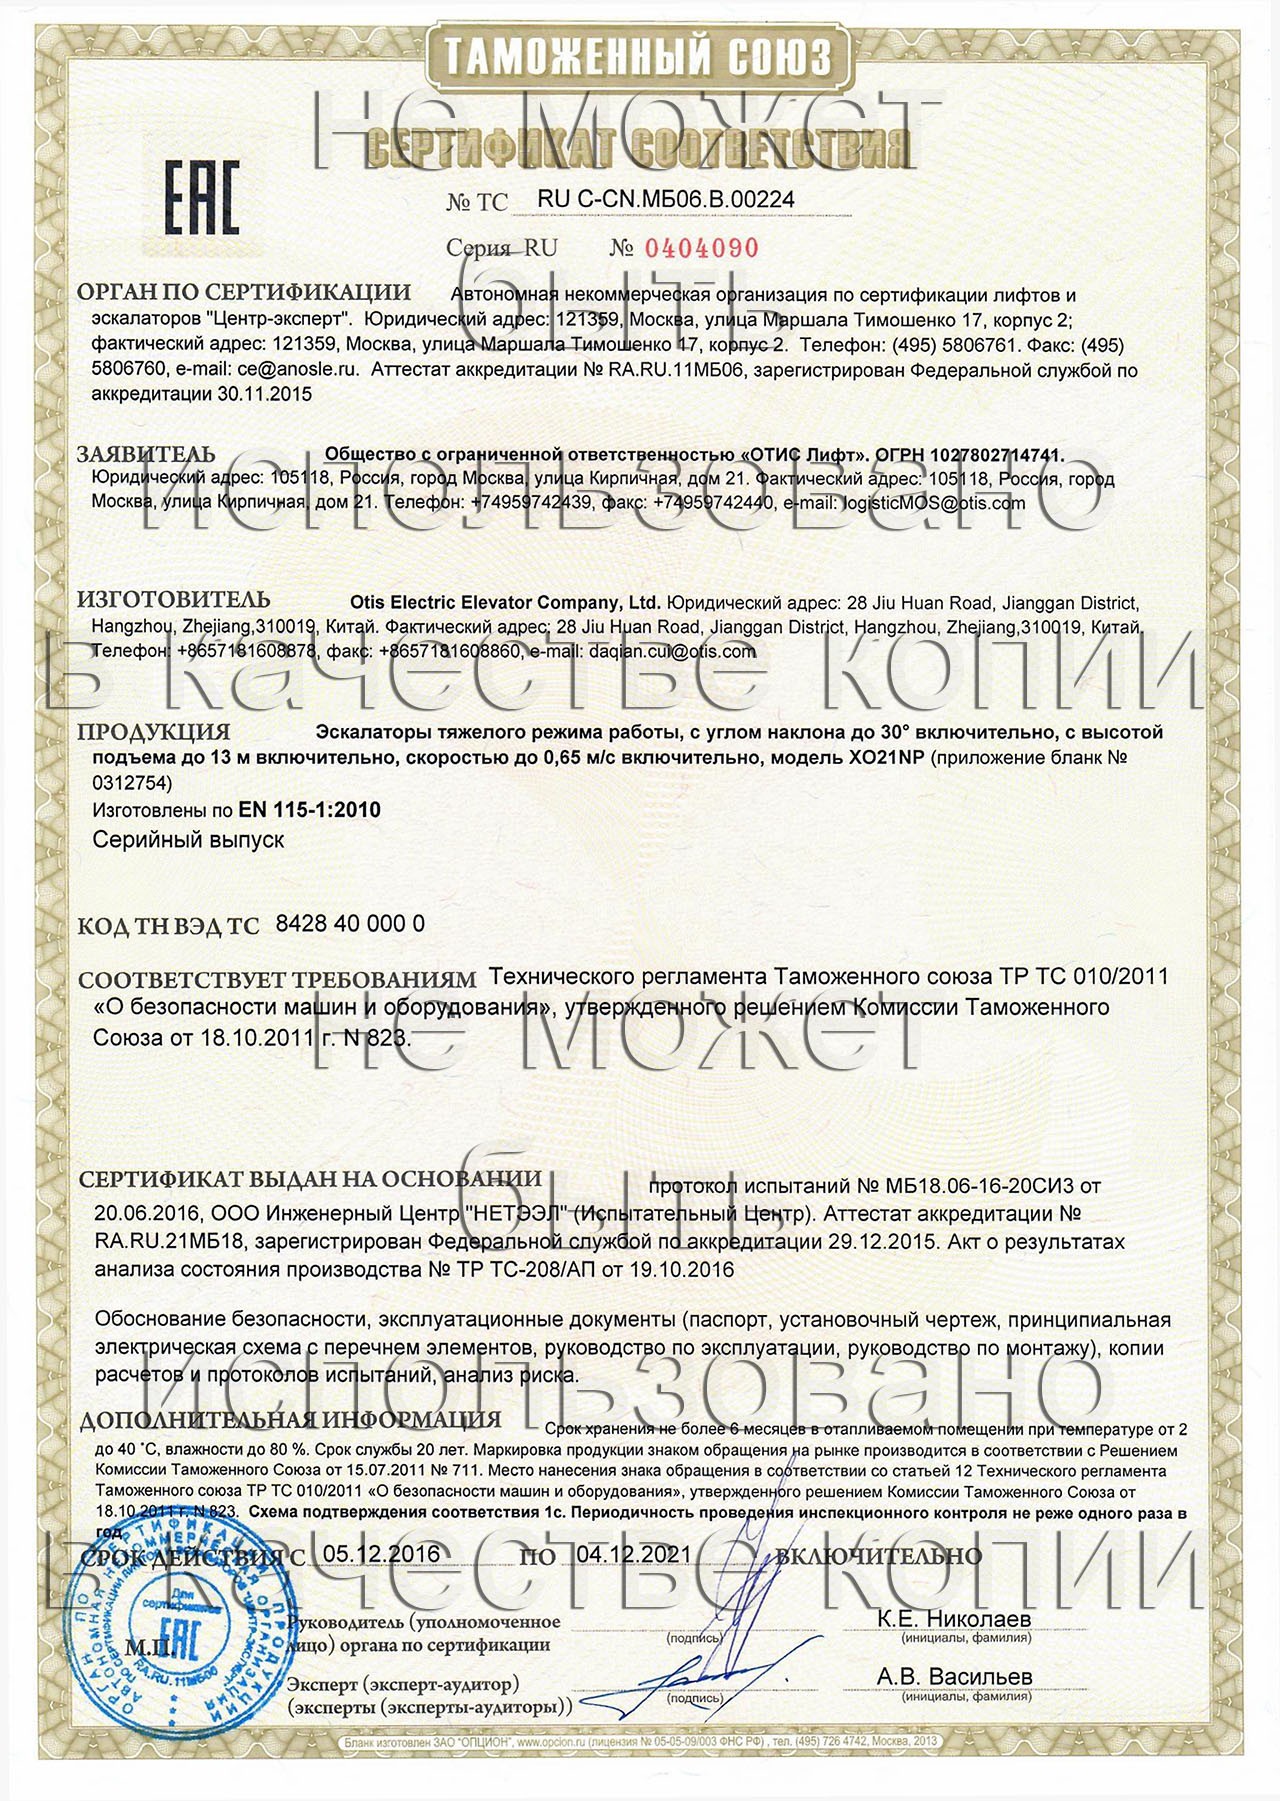 сертификат ТС RU С-CN.МБ06.В.00224 на эскалаторы тяжелого режима работы